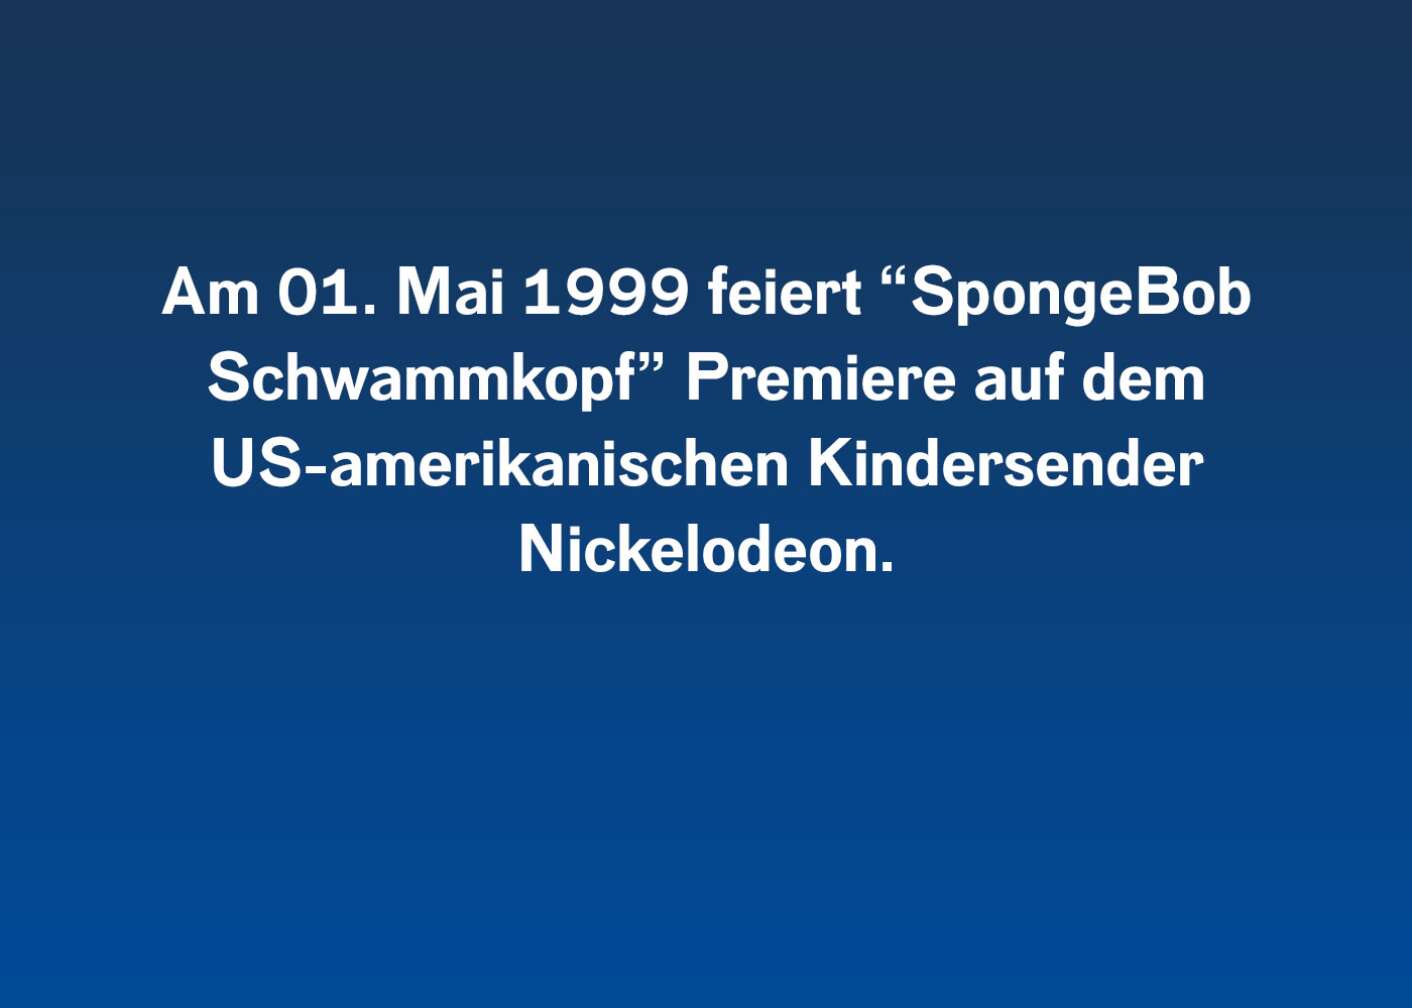 Am 01. Mai 1999 feiert „SpongeBob Schwammkopf“ Premiere auf dem US-amerikanischen Kindersender Nickelodeon.